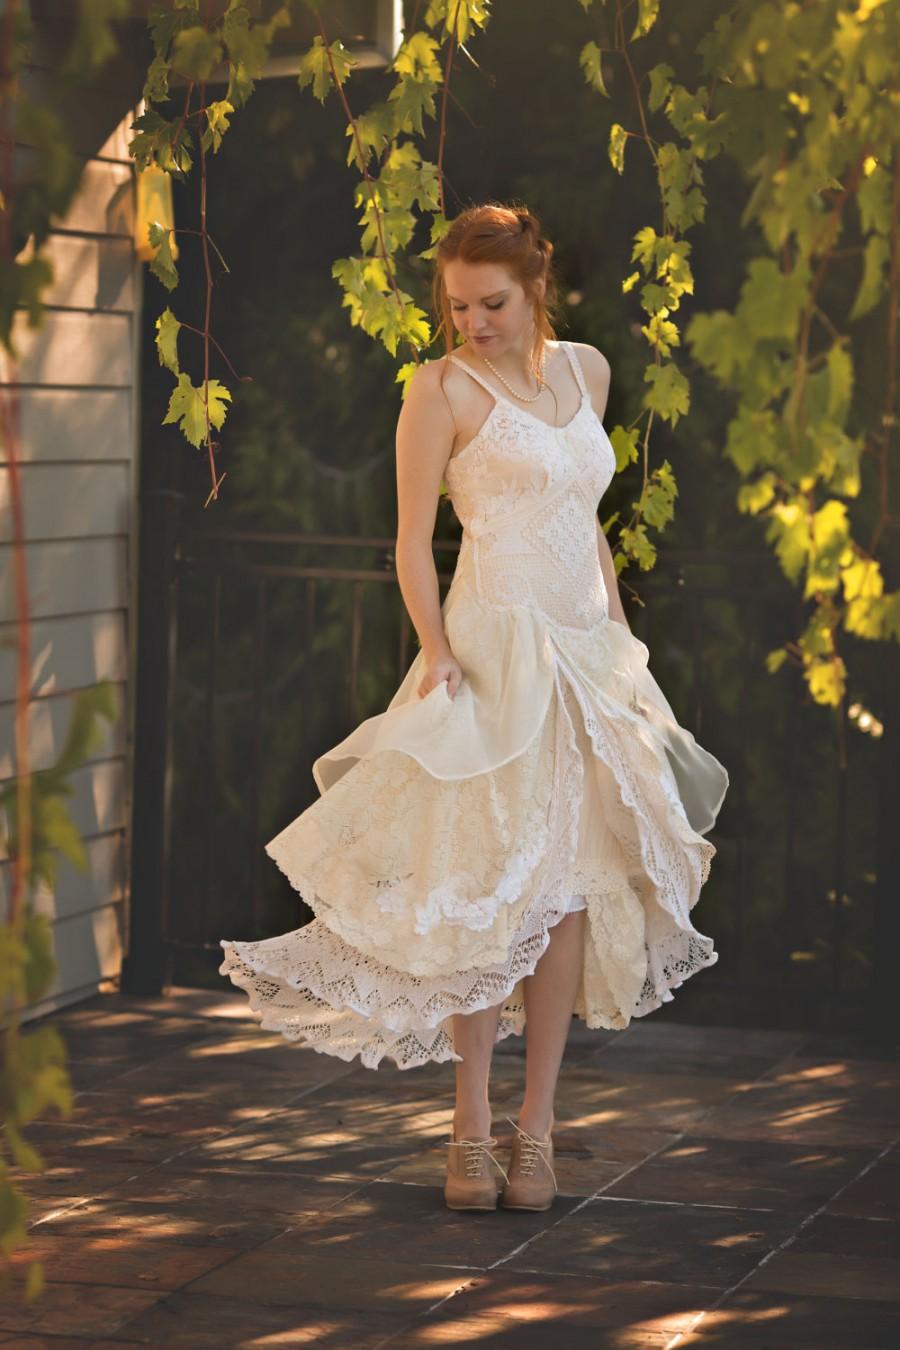 زفاف - NEW! Vintage Romance Lace Wedding Dress, Ivory Lace Wedding Dress, Bohemian Luxe Layered Lace Wedding Dress, Gypsy Lace Wedding Dress